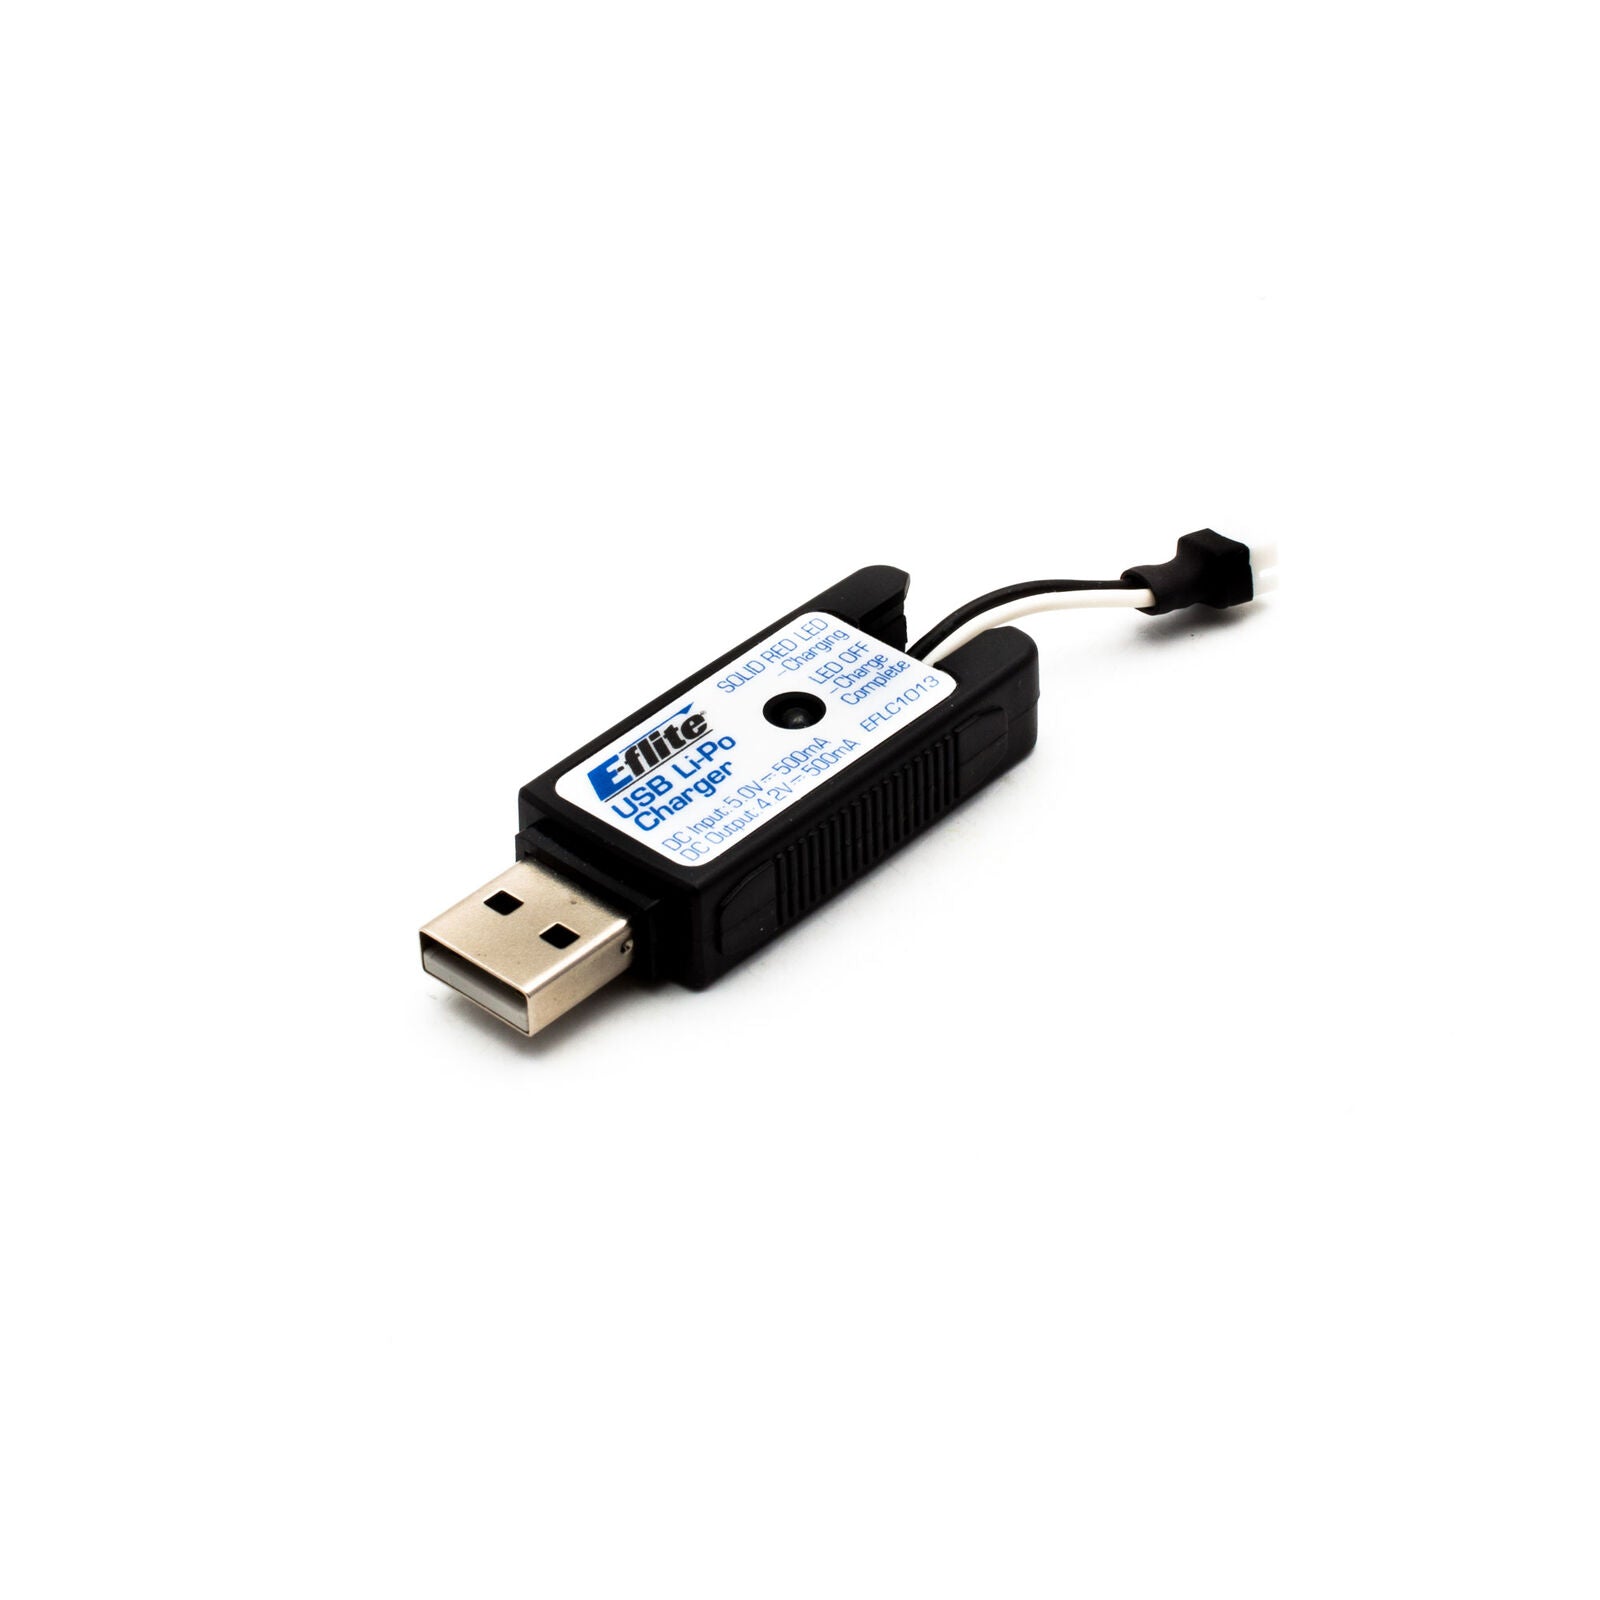 EFLITE EFLC1013 1S USB Li-Po Charger, 500mAh High Current UMX